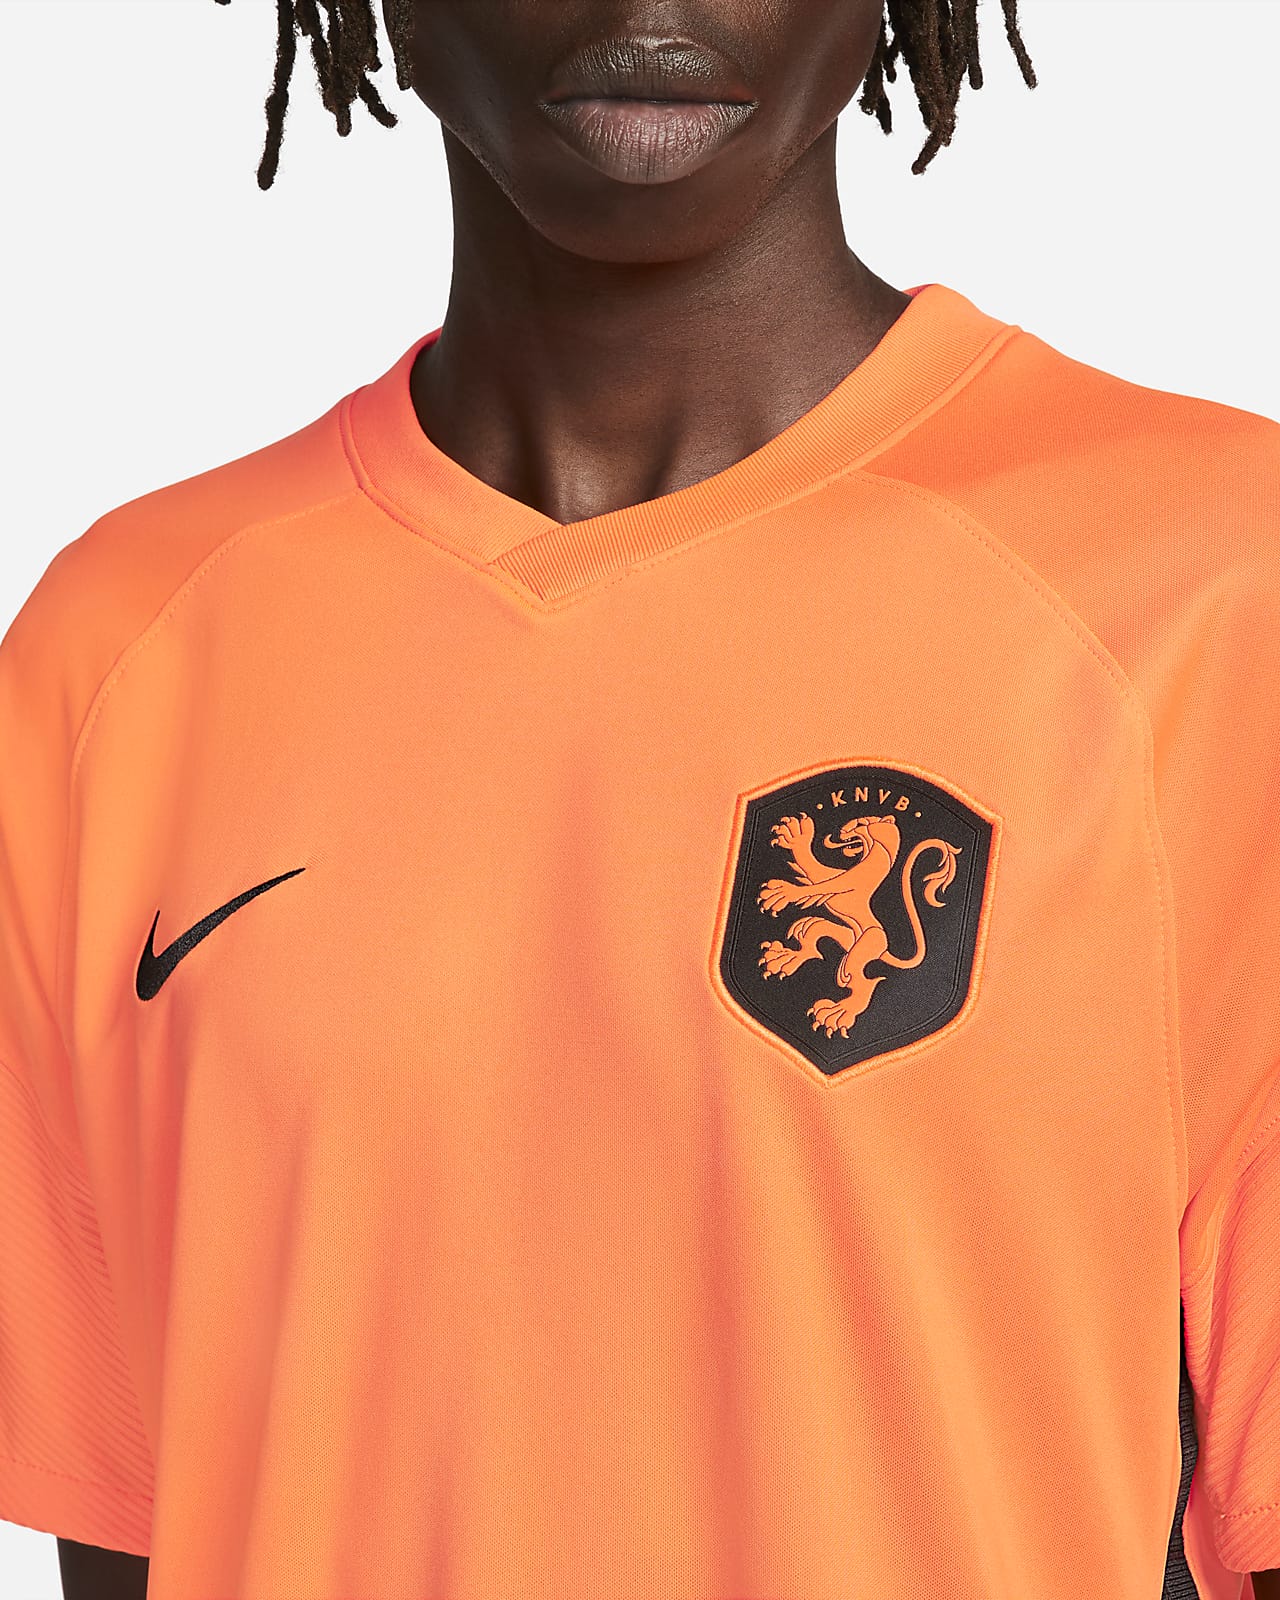 holland soccer apparel